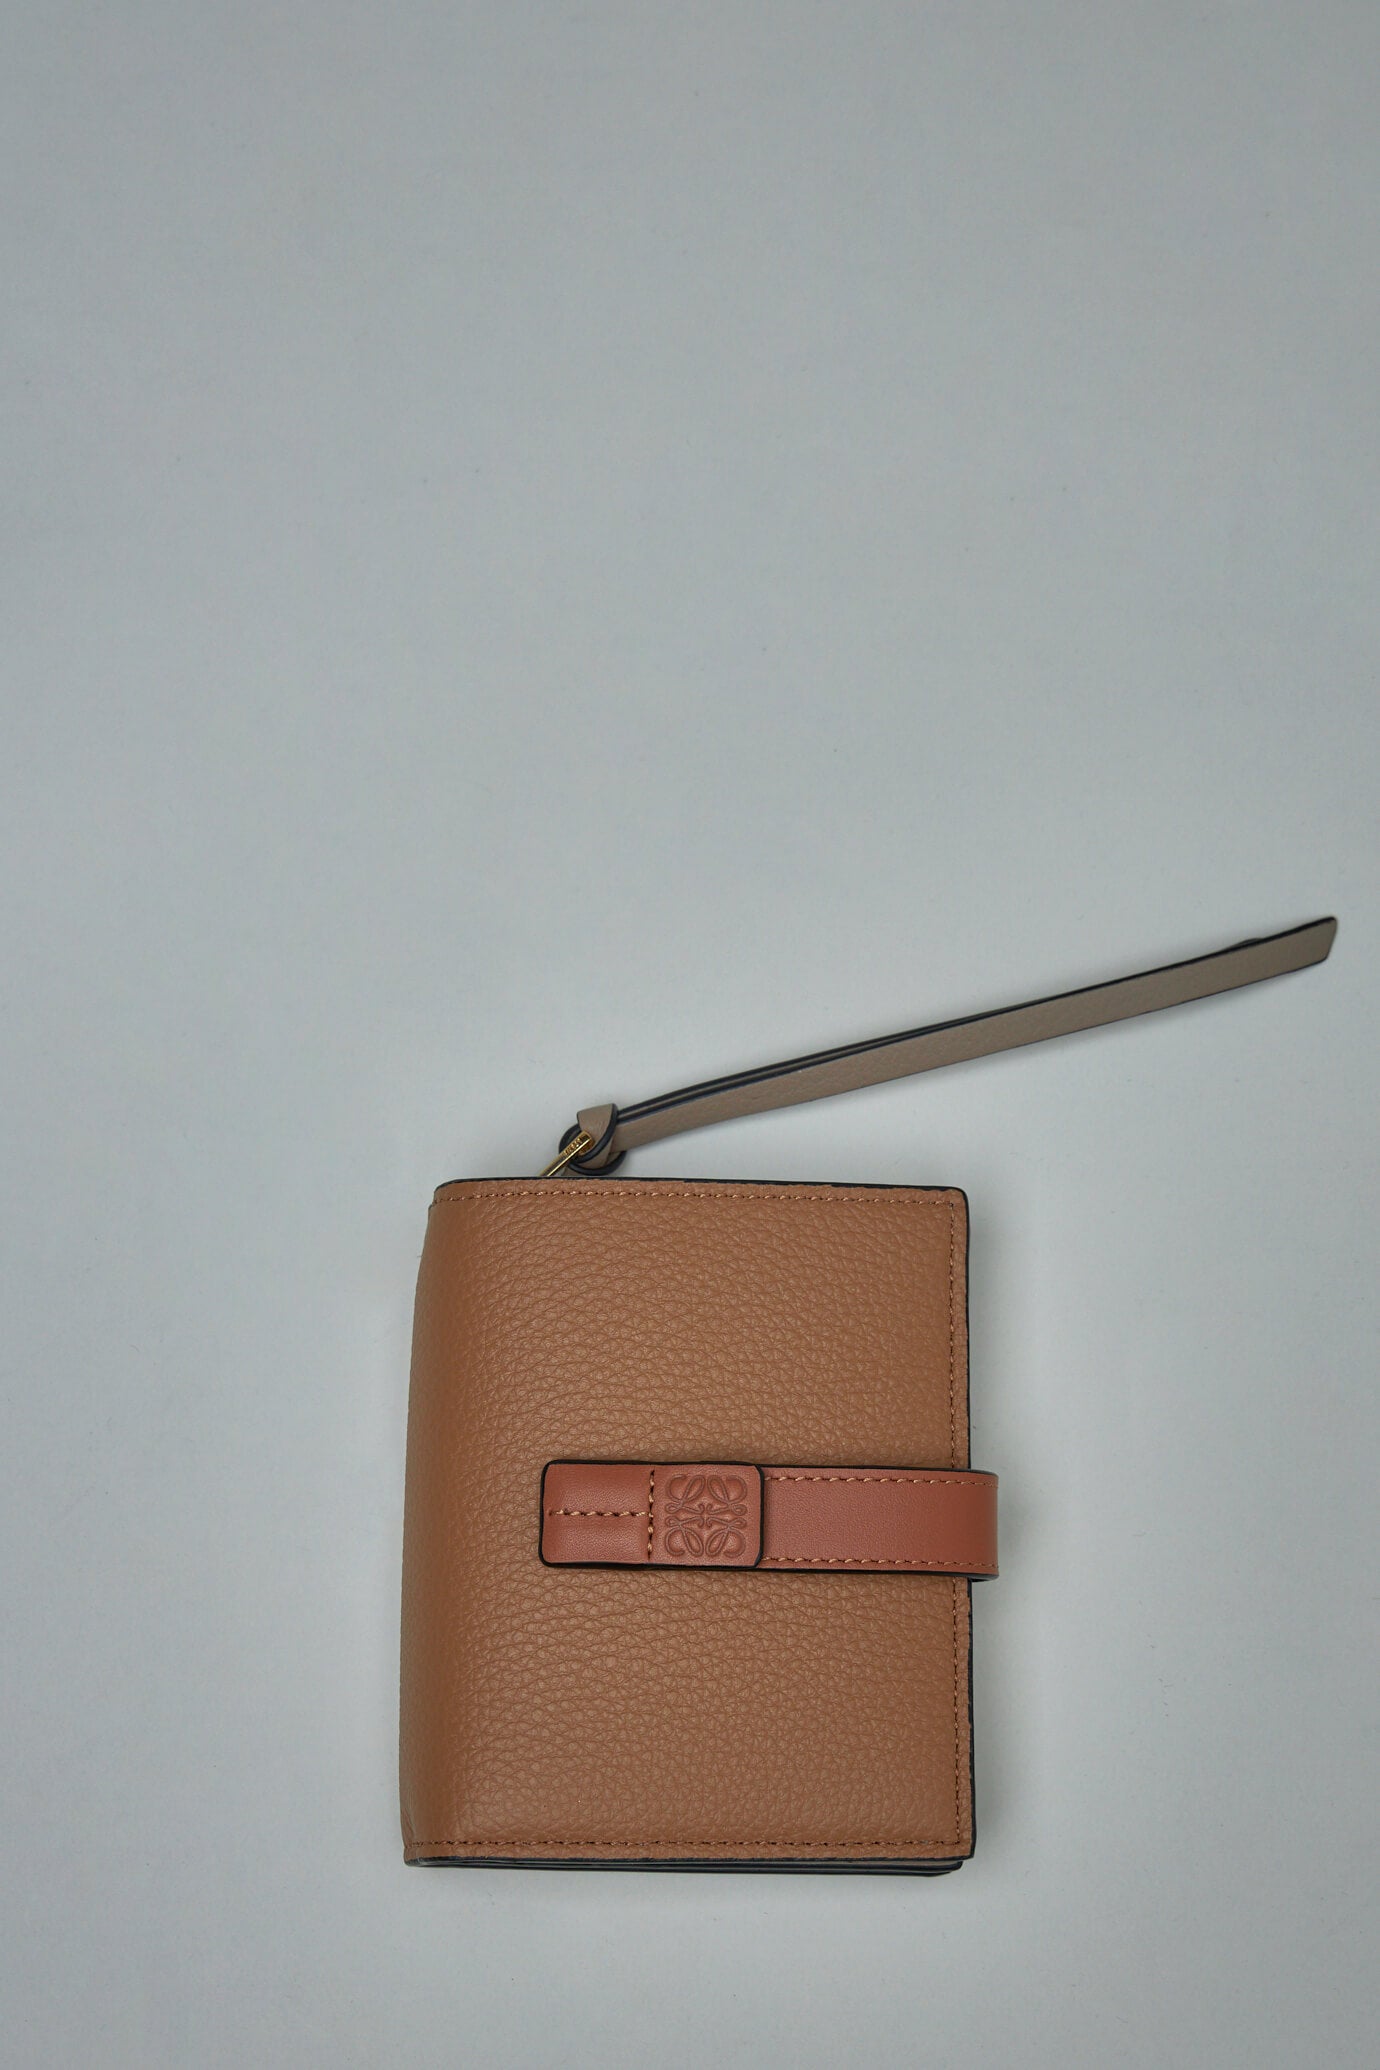 Loewe Compact Zip Wallet – LABELS